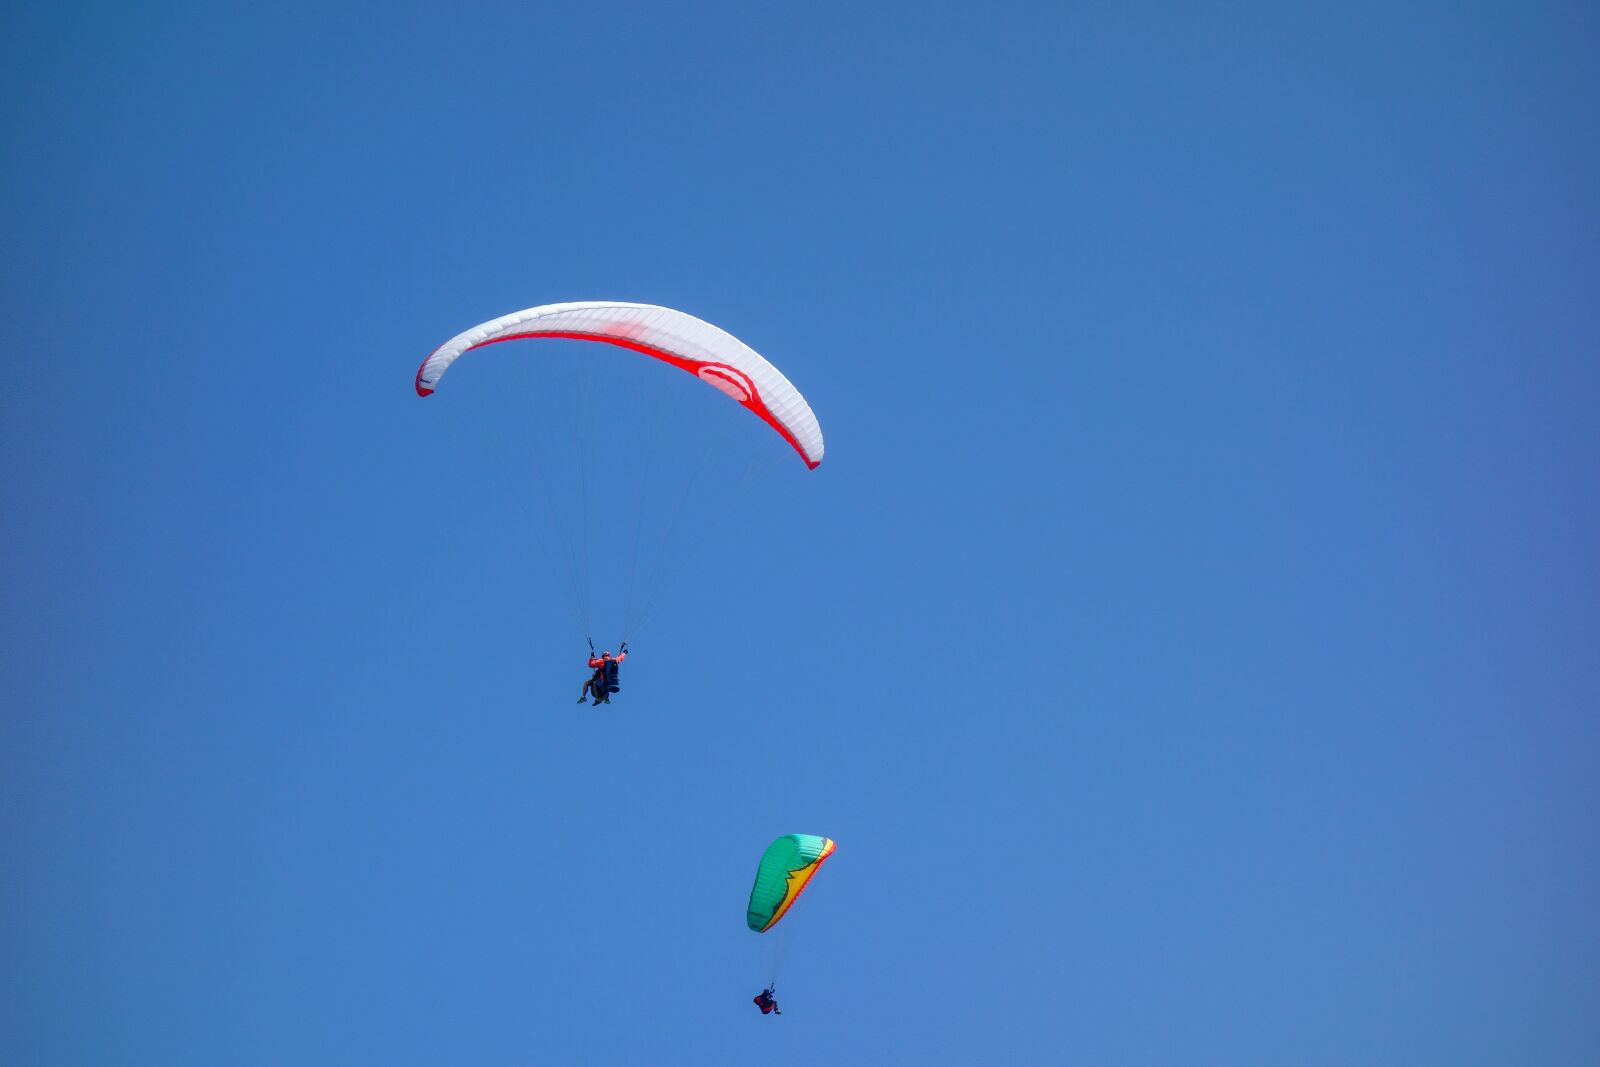 Sony Cyber-shot DSC-RX100 sample photo. Paragliding, sport, sky photography